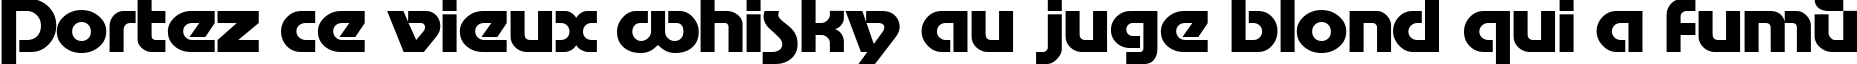 Пример написания шрифтом Motter Tektura Cyrilic текста на французском